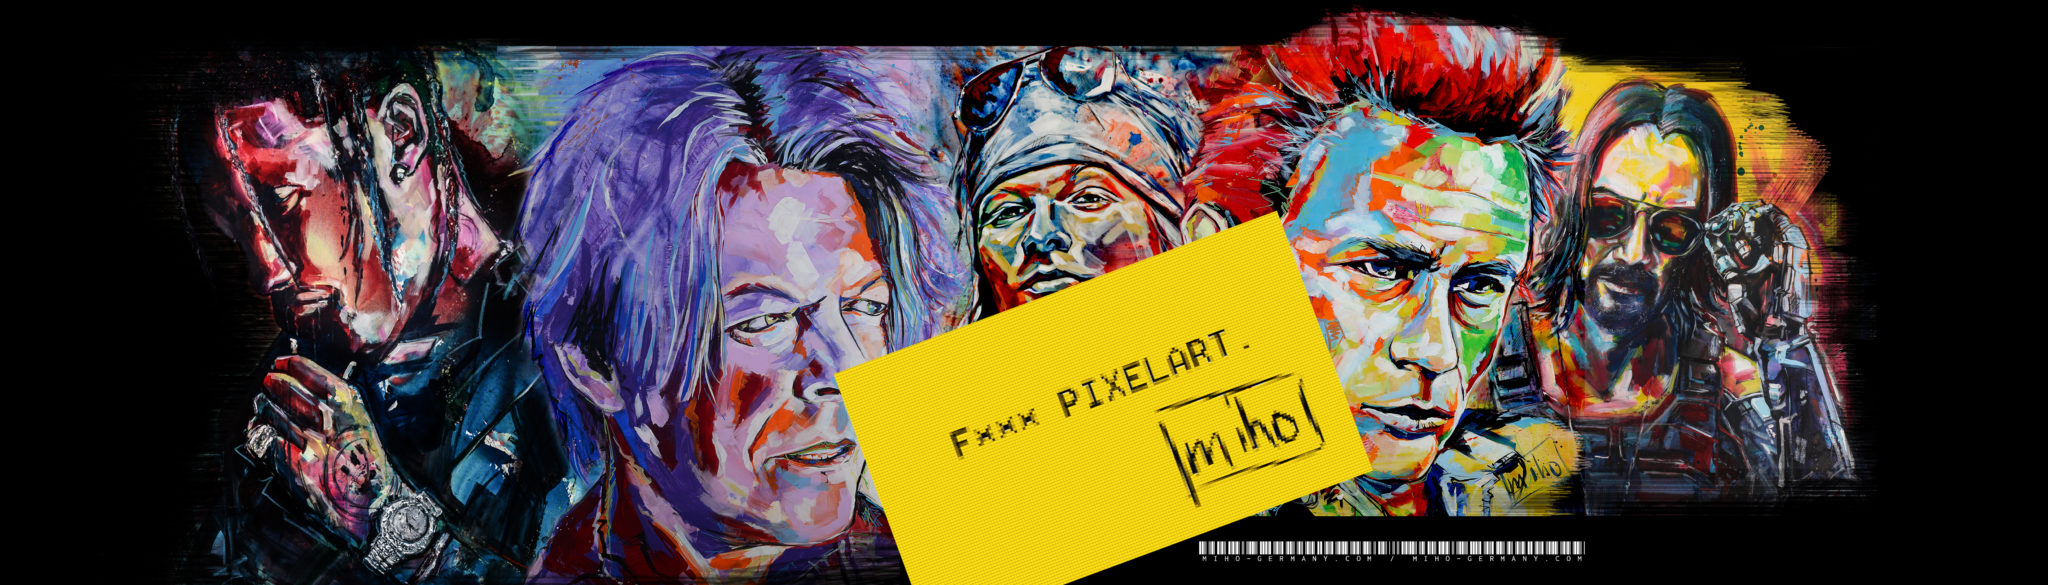 Banner für die 1/1 NFT-Collection "Pixel Art? Ha." von miho auf opensea.io/miho_germany